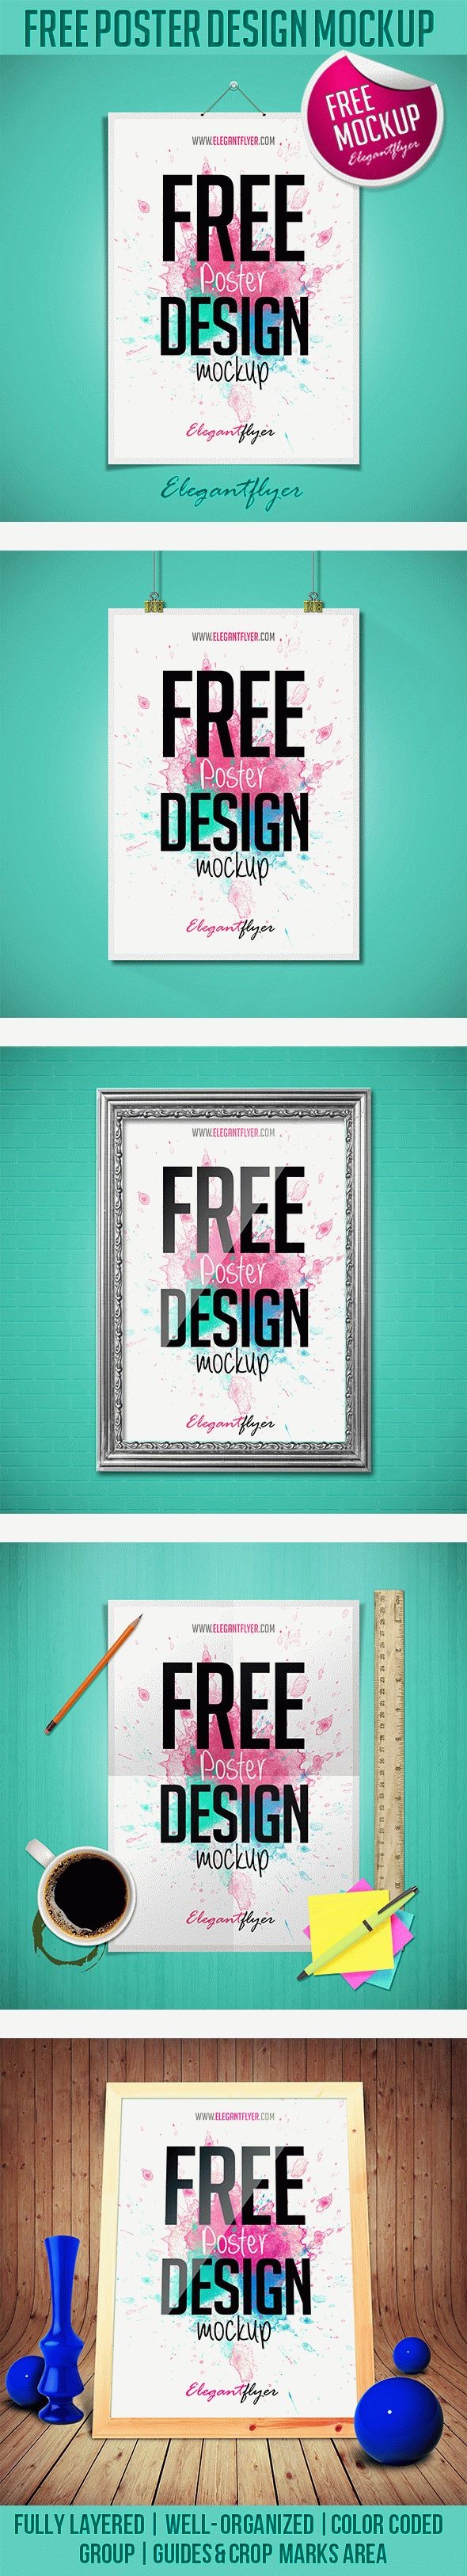 Diseño de maqueta gratuito para póster. by ElegantFlyer